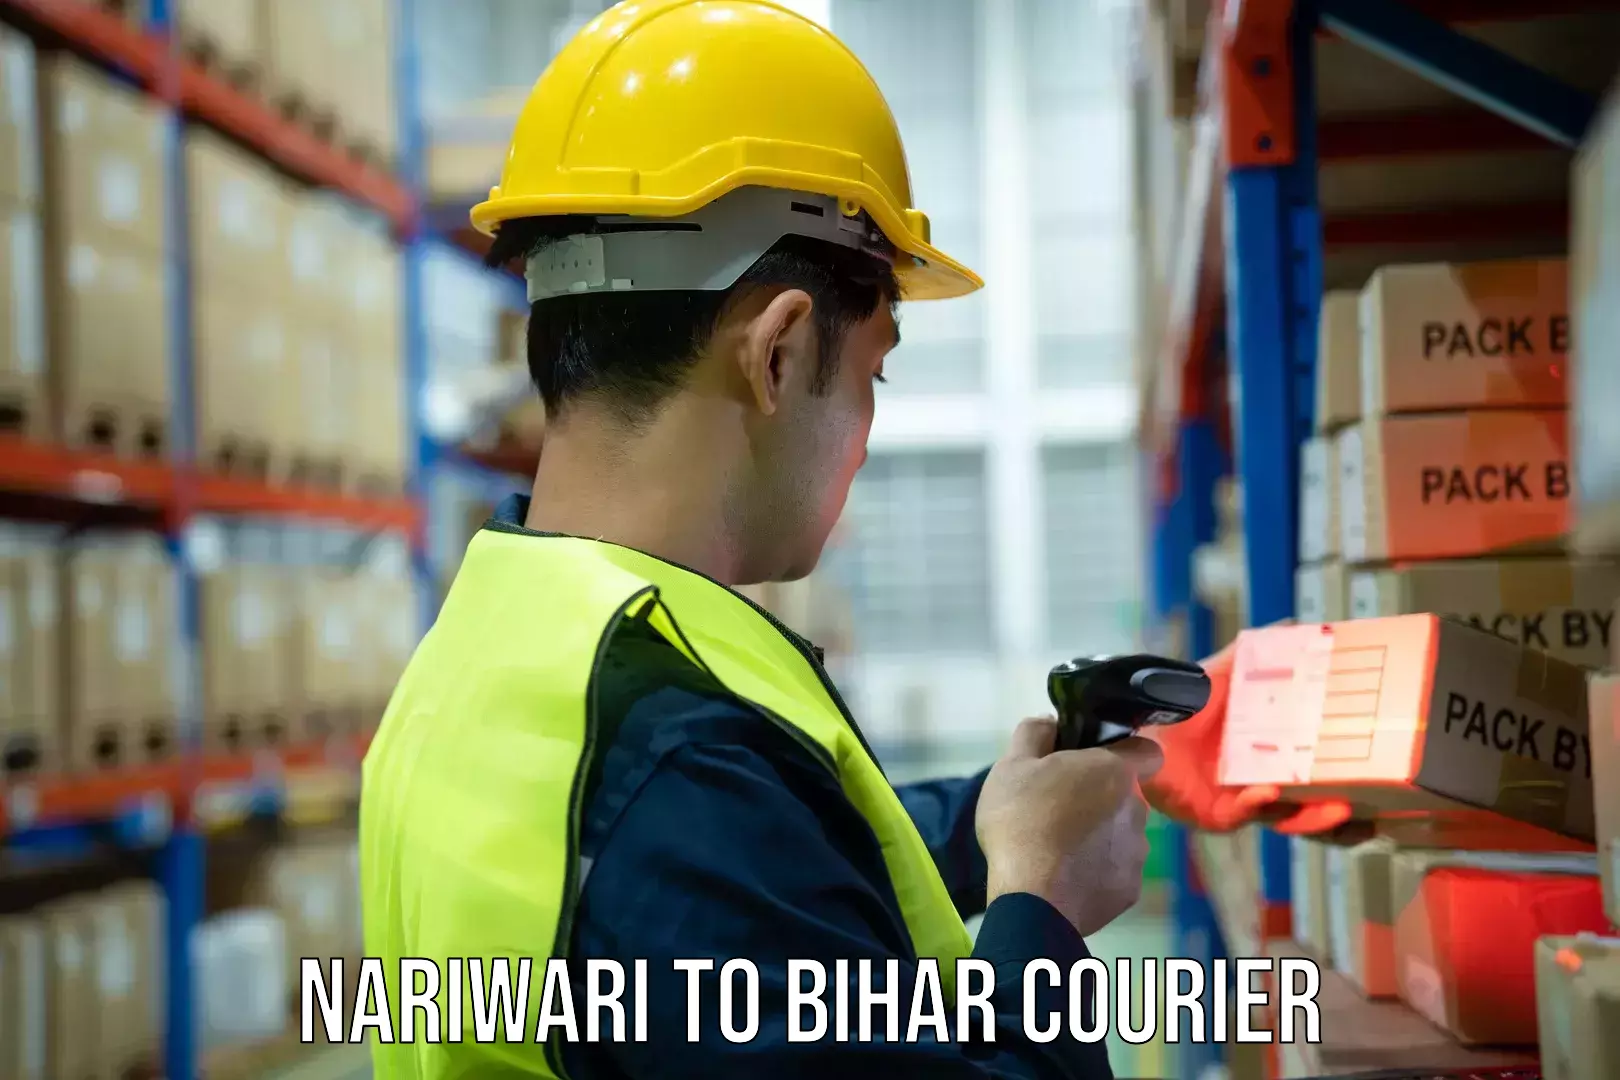 Advanced courier platforms Nariwari to Biraul